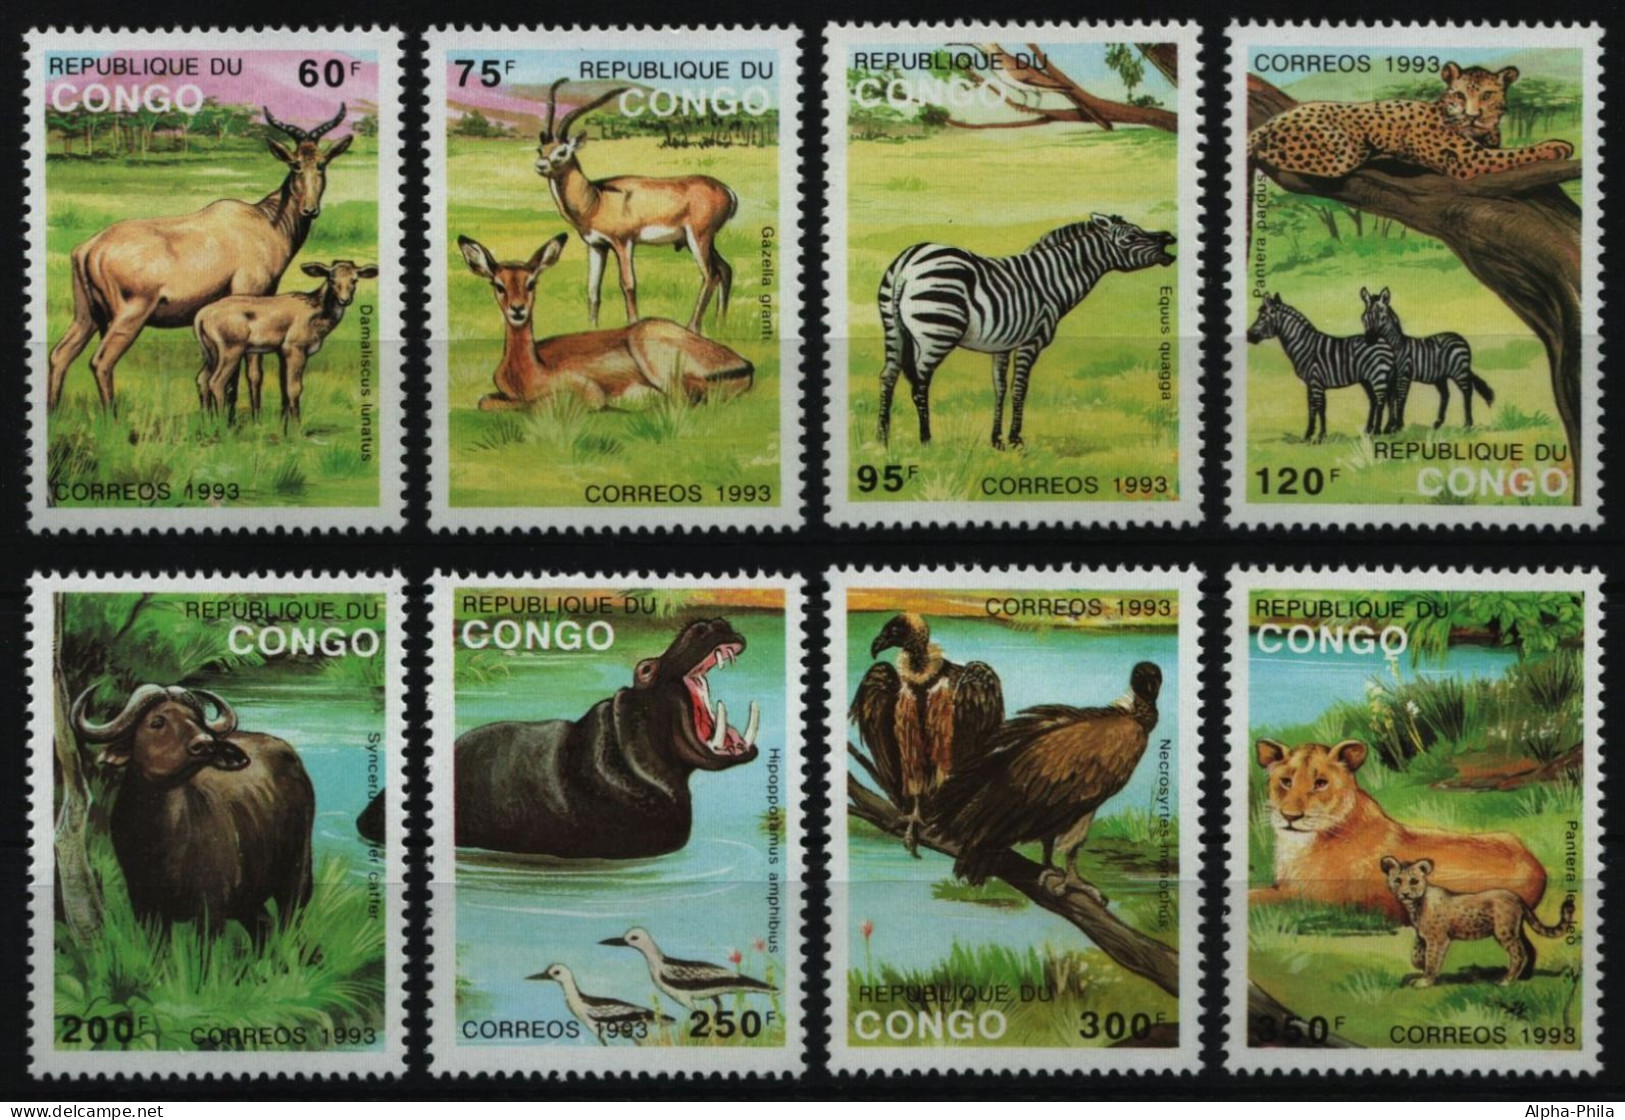 Kongo-Brazzaville 1993 - Mi-Nr. 1363-1370 I ** - MNH - Wildtiere / Wild Animals - Ungebraucht